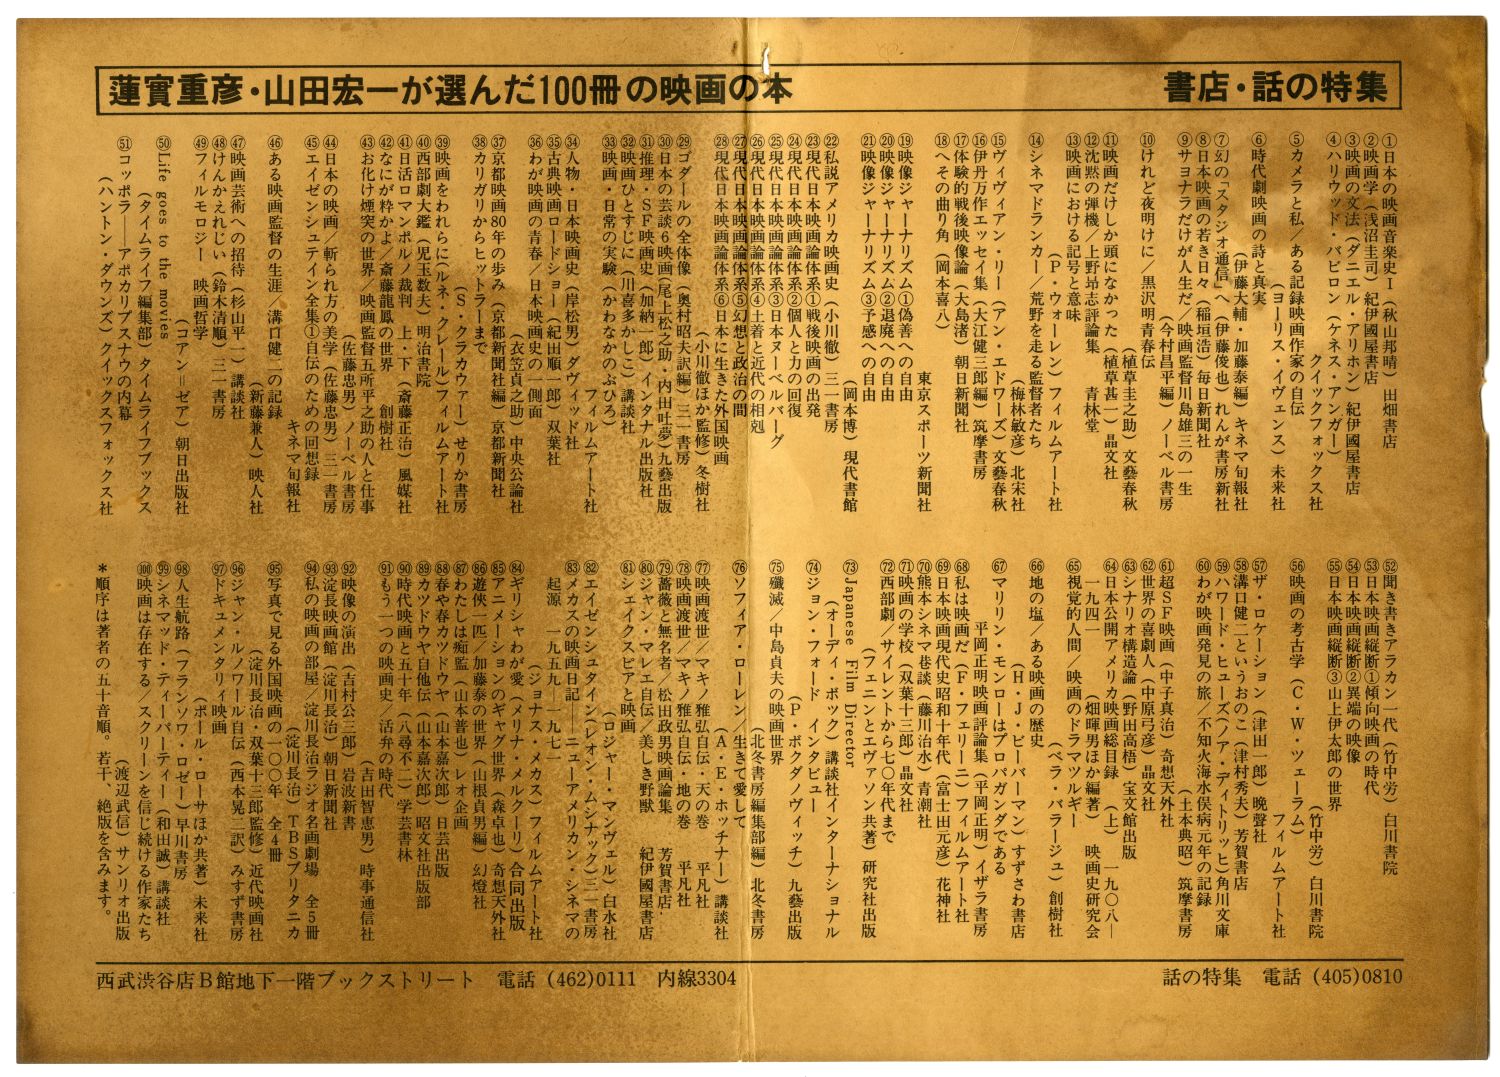 1980年の「蓮實重彦・山田宏一が選んだ100冊の映画の本」ちらし表